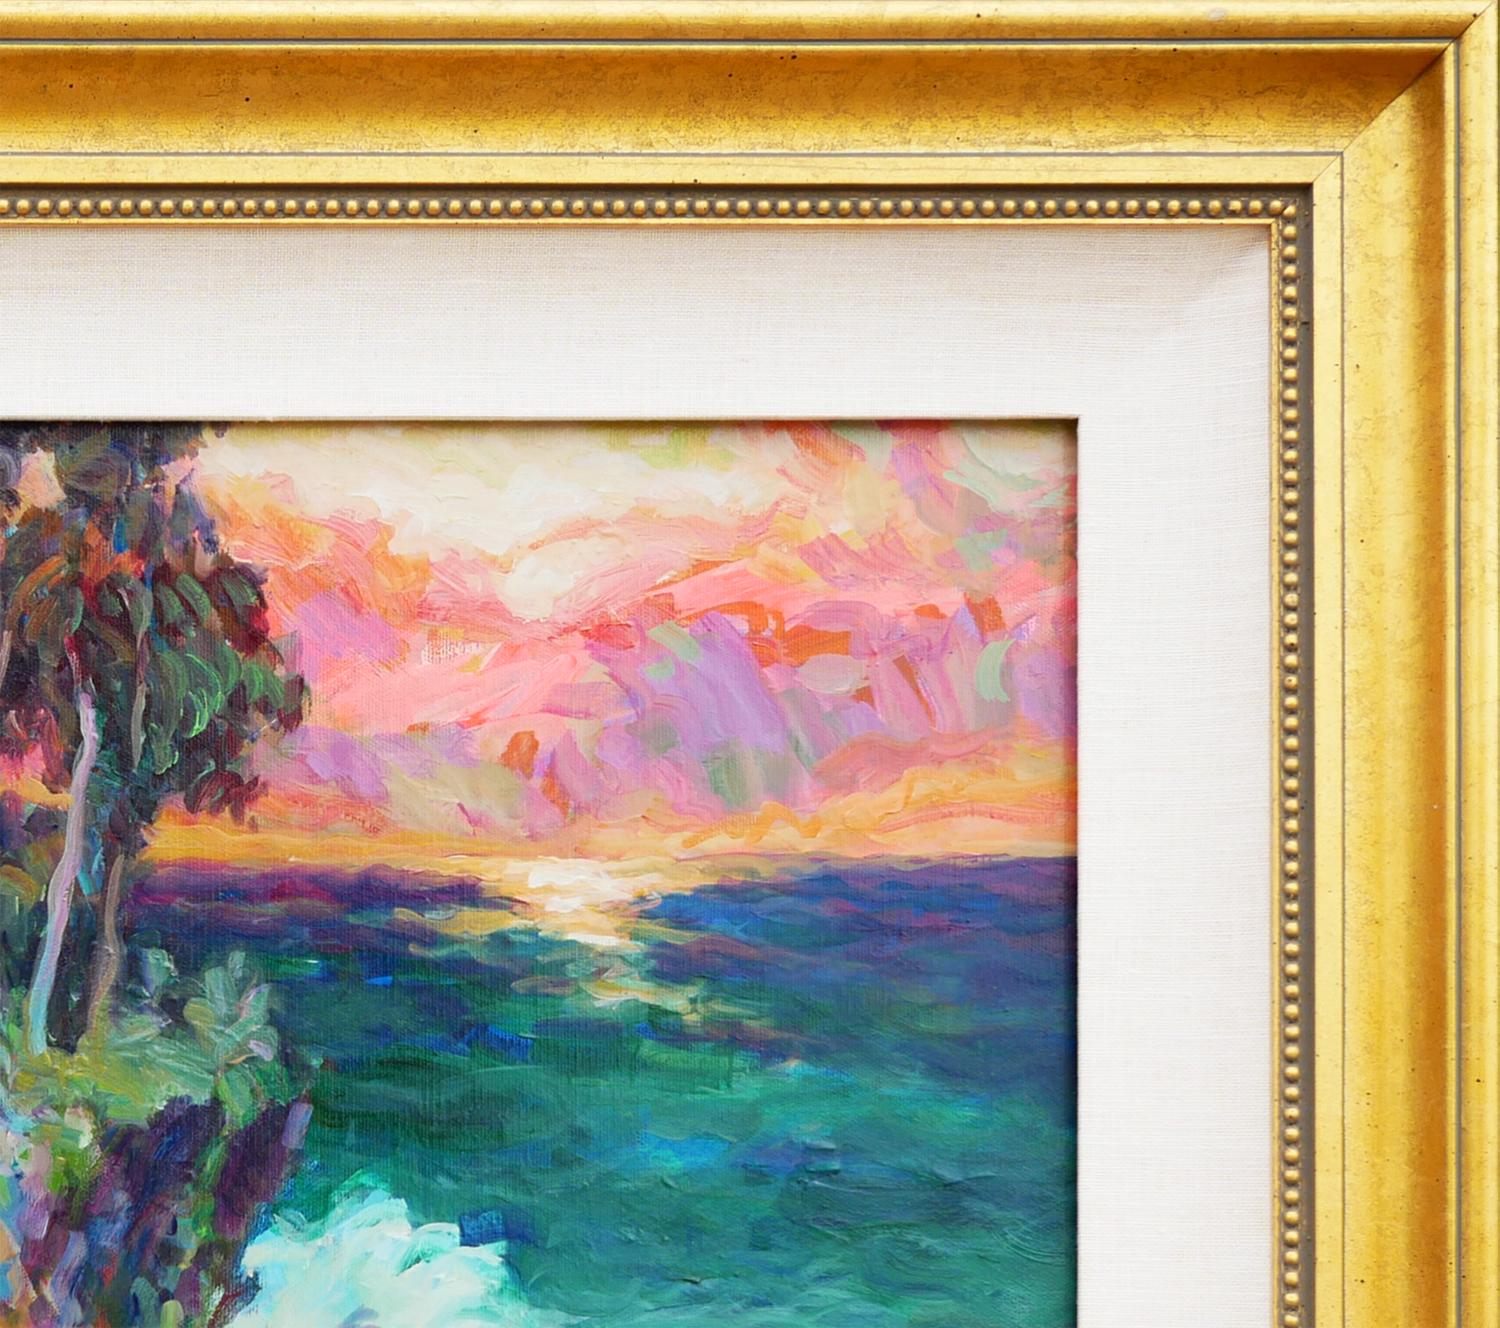 Wunderschönes abstraktes impressionistisches Gemälde in Juwelentönen von Manfred H. Kuhnert. Das Gemälde zeigt die Meereslandschaft am Crystal Cove Laguna Beach. Ein kleines Haus steht auf einer Ebene, auf der die Wellen des Ozeans aufschlagen.